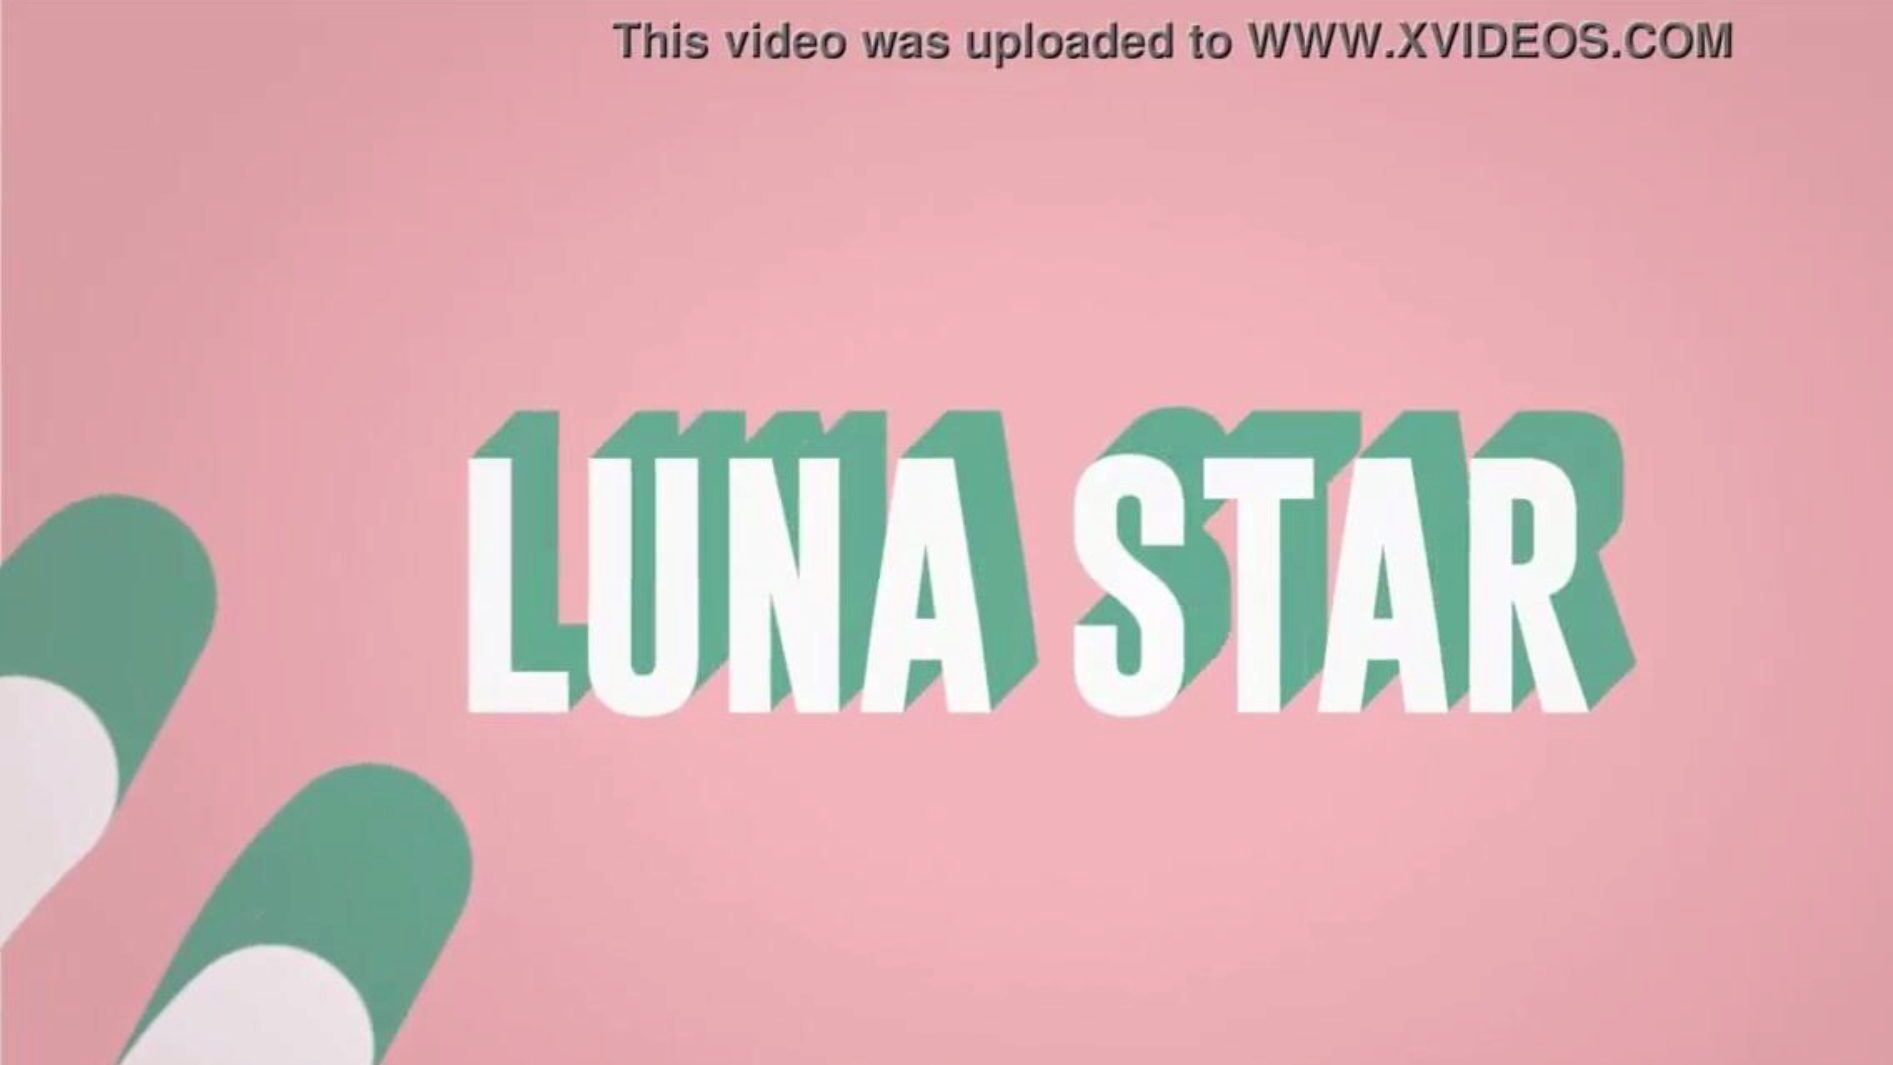 είναι το γαμημένο μου wifi: επεισόδιο brazzers με luna star δείτε πλήρη στο www.zzfull.com/luna